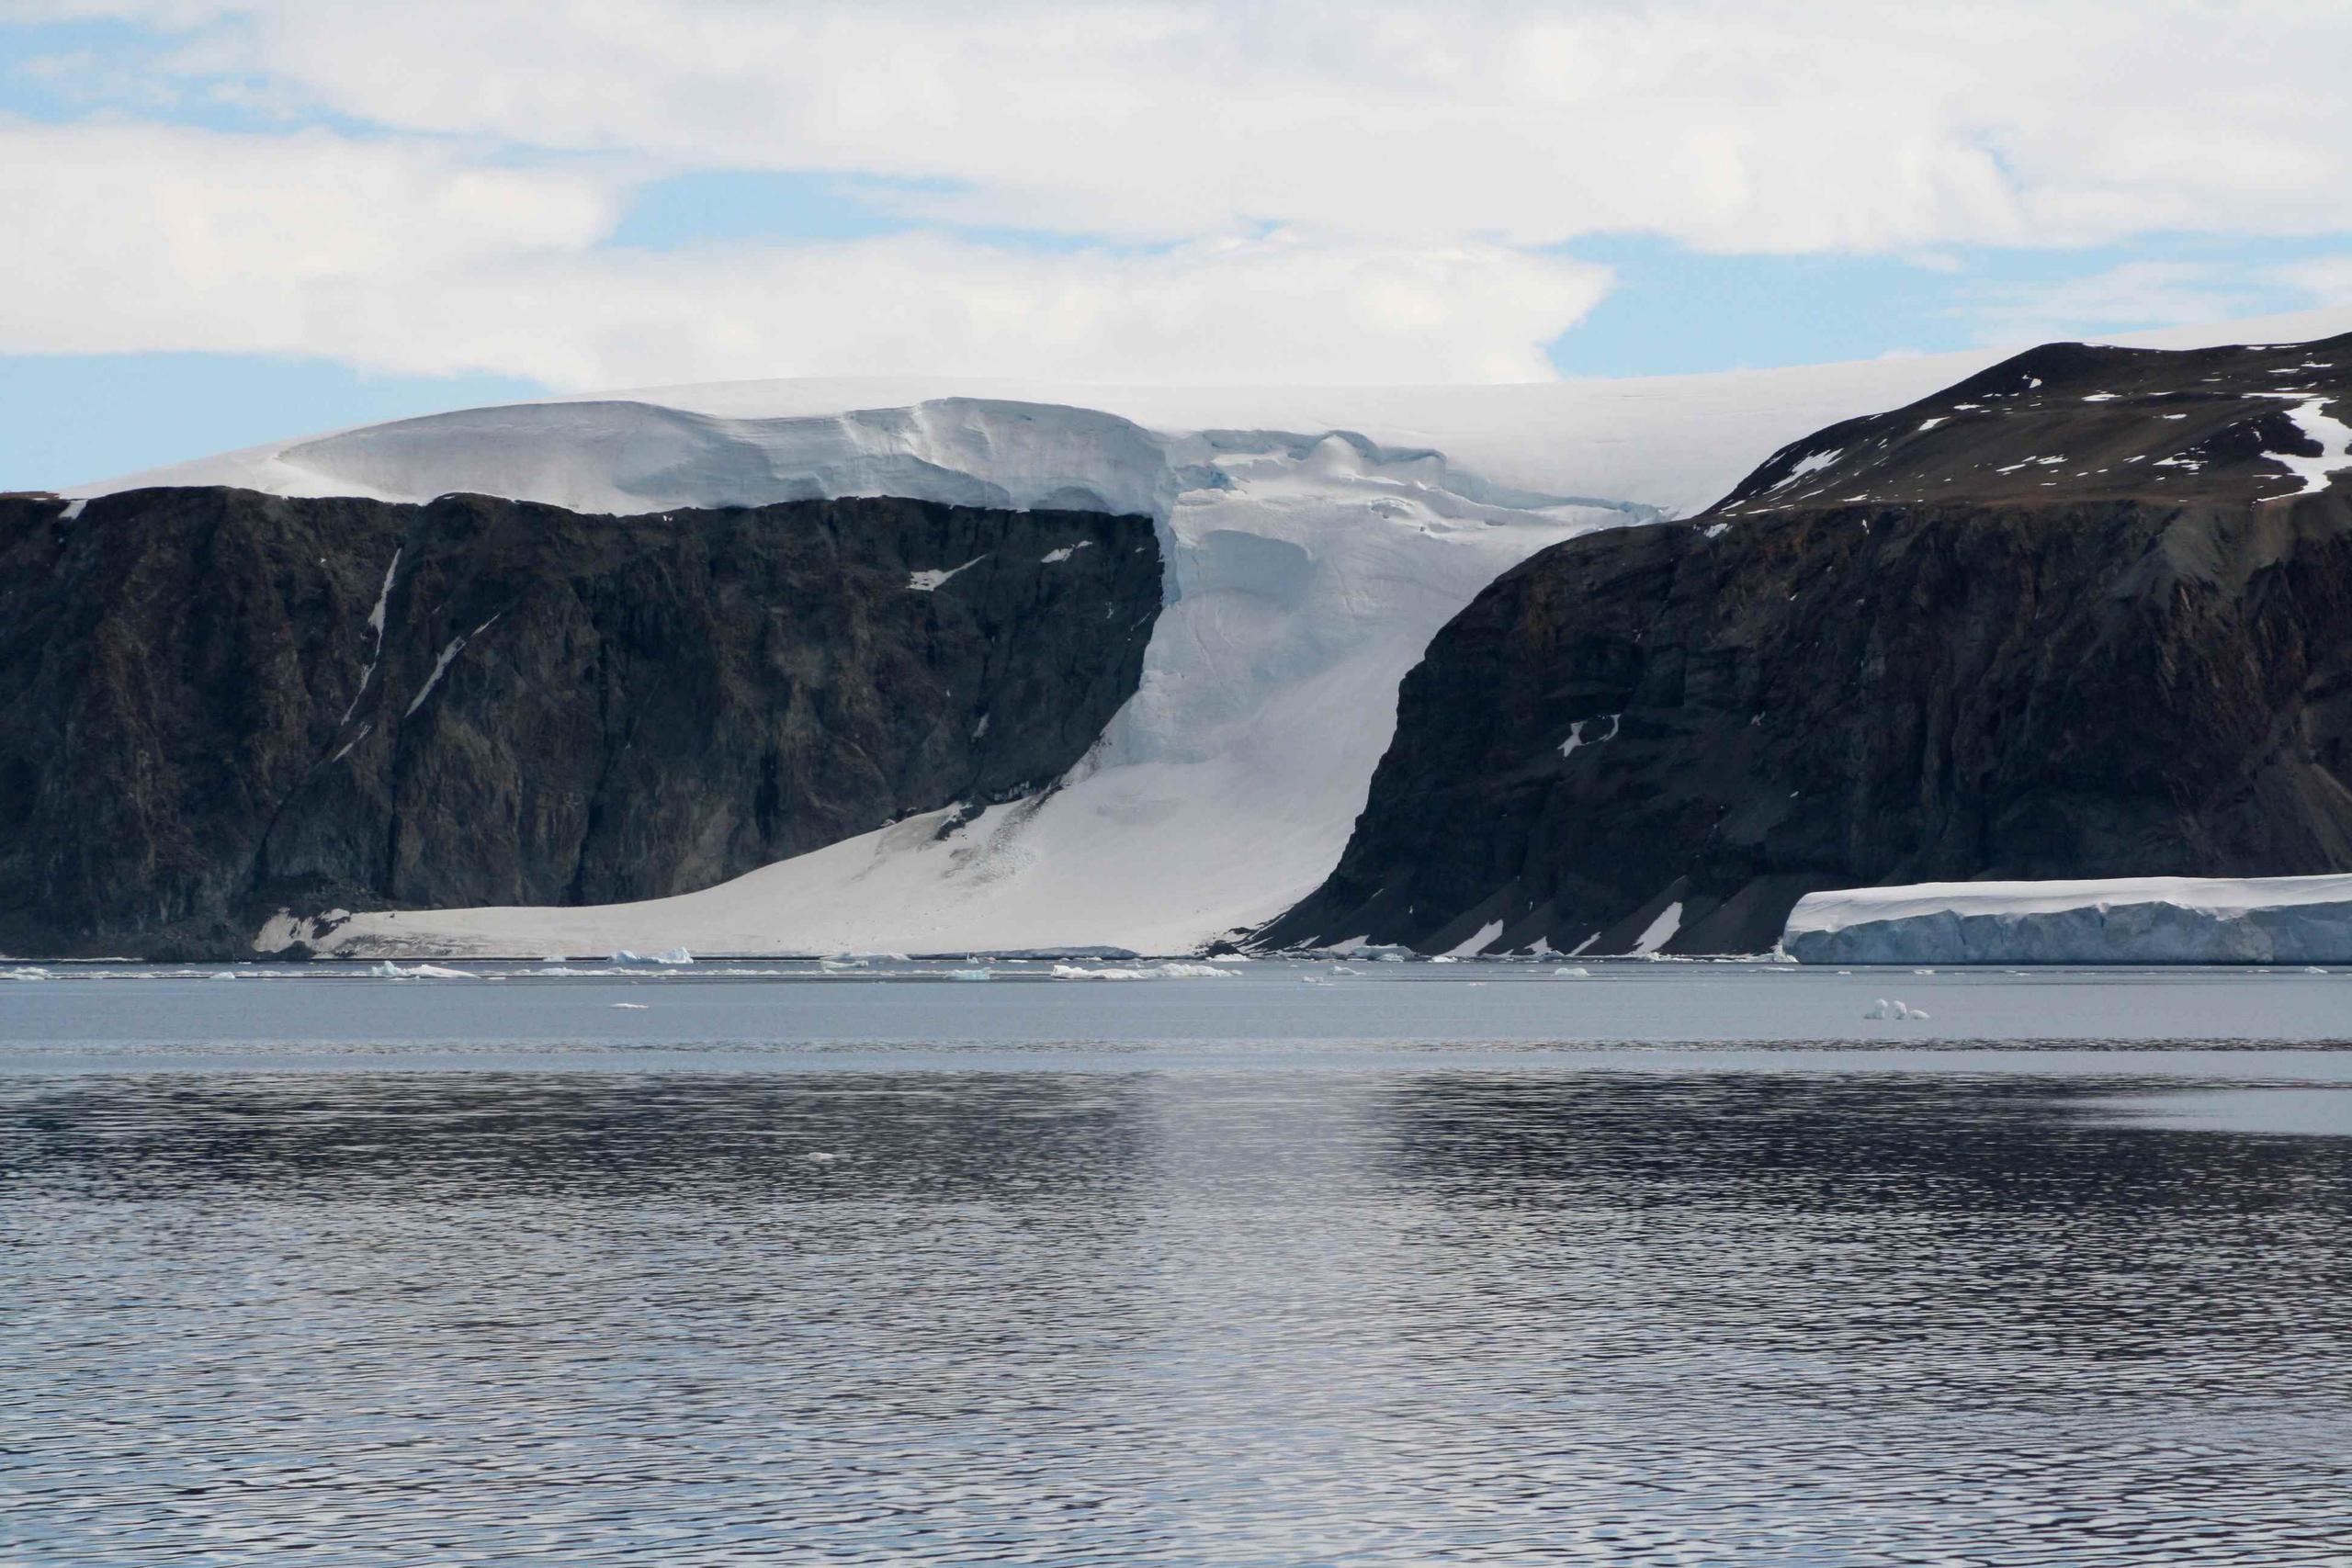 La ESA apuntó que las barreras colindantes, Larsen A y Larsen B en Antártica, experimentaron un proceso similar, con fragmentaciones espectaculares en 1995 y 2002, respectivamente". (Agencia EFE)